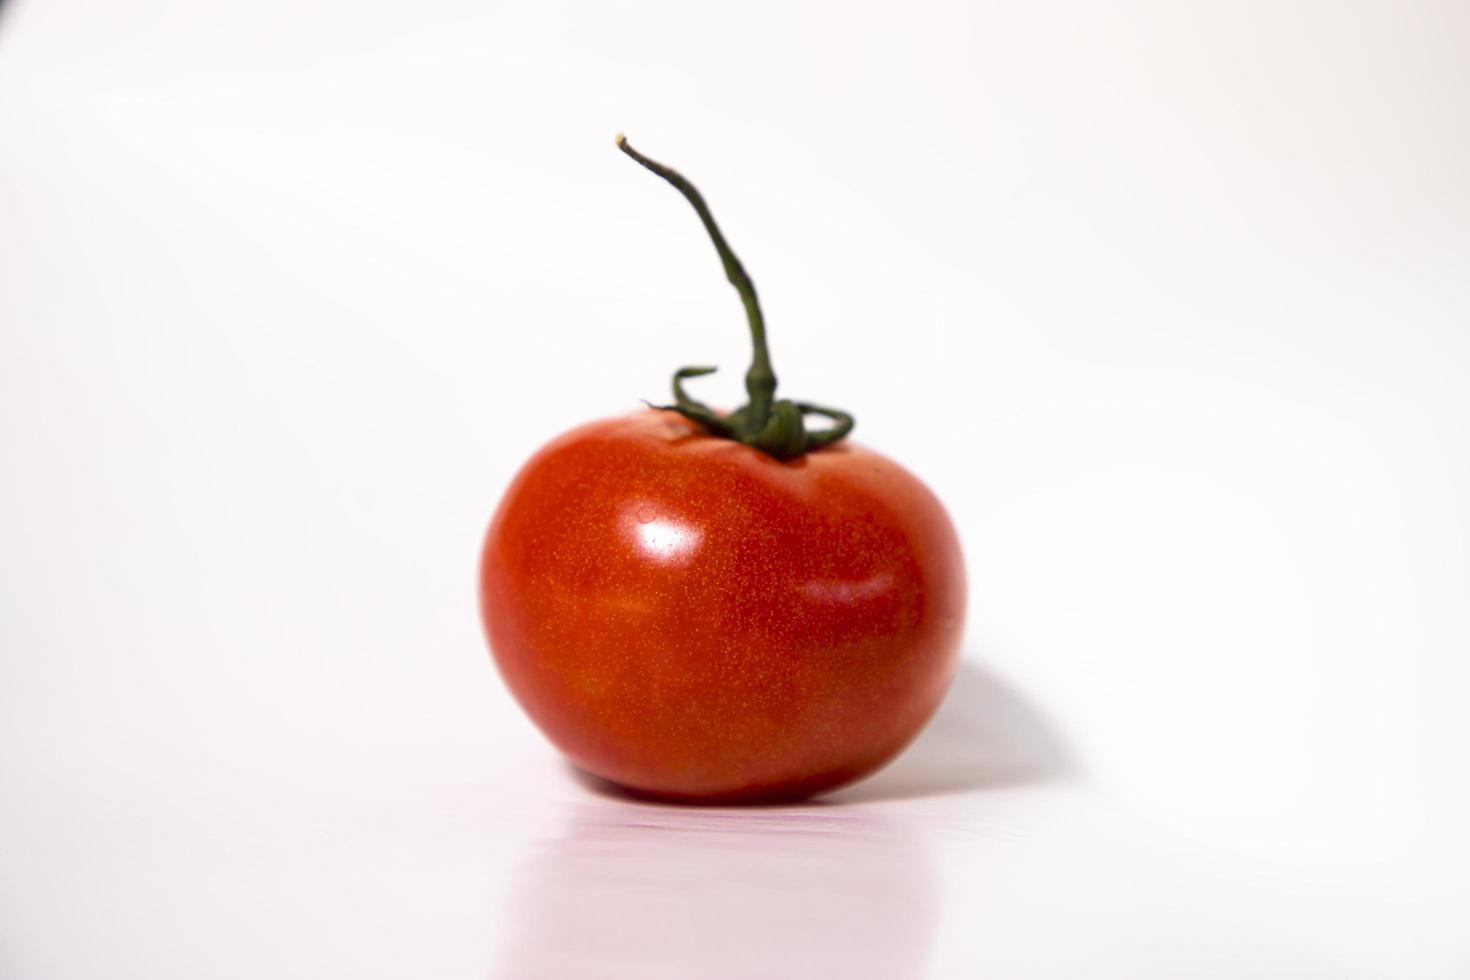 tomate maduro vermelho fresco isolado no fundo. salada de vegetais saudável orgânica crua natural foto